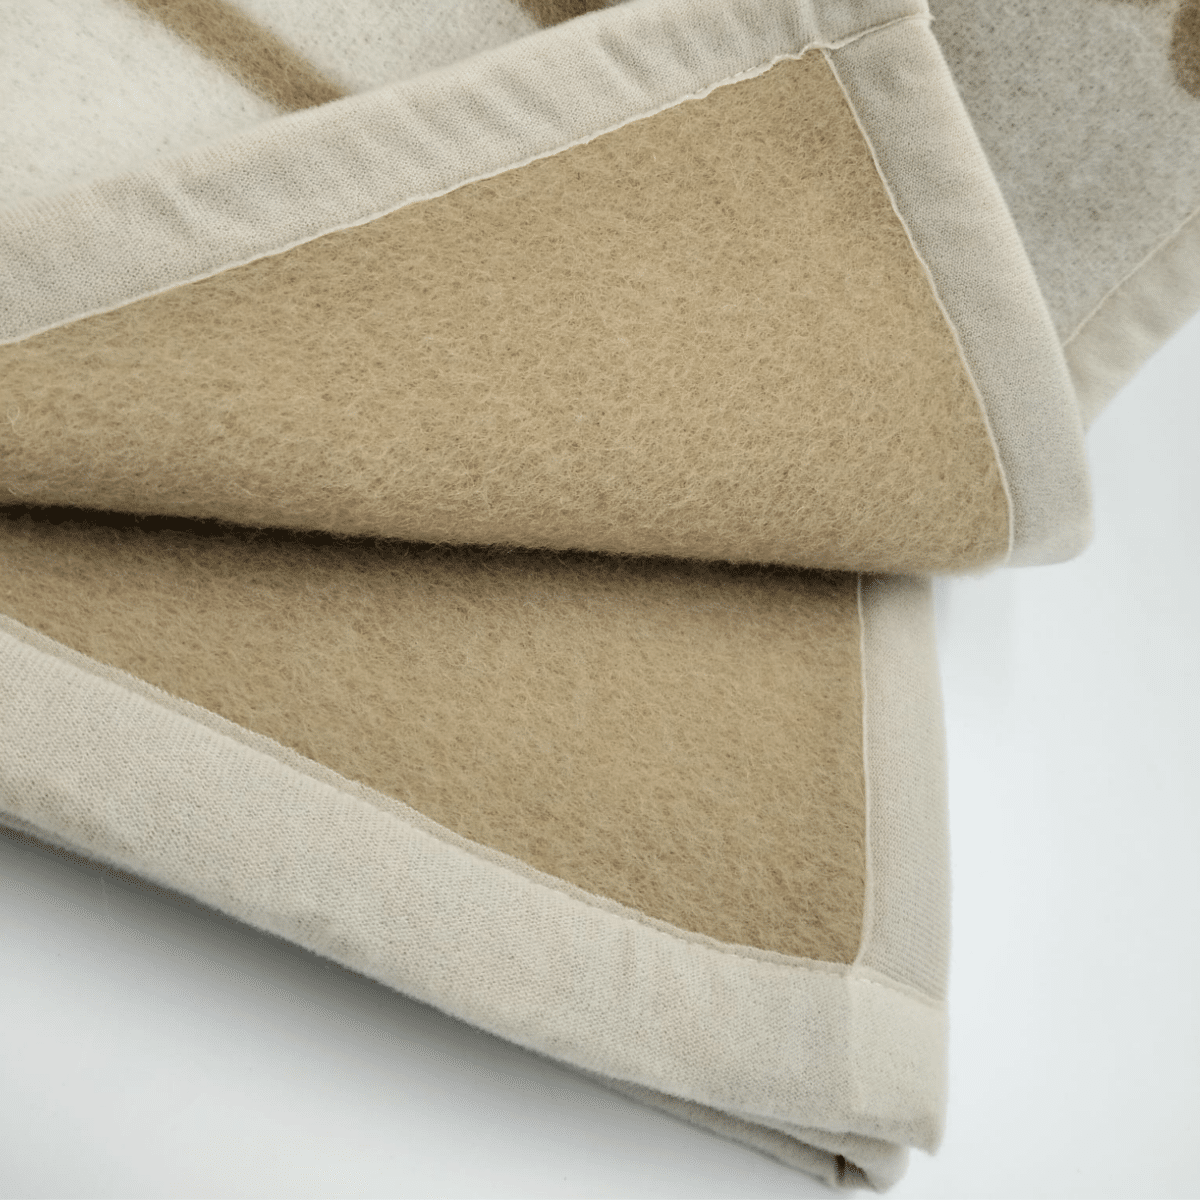 coperta-regale-pura-lana-vergine-beige-made-in-italy-dettaglio-angolo-interno